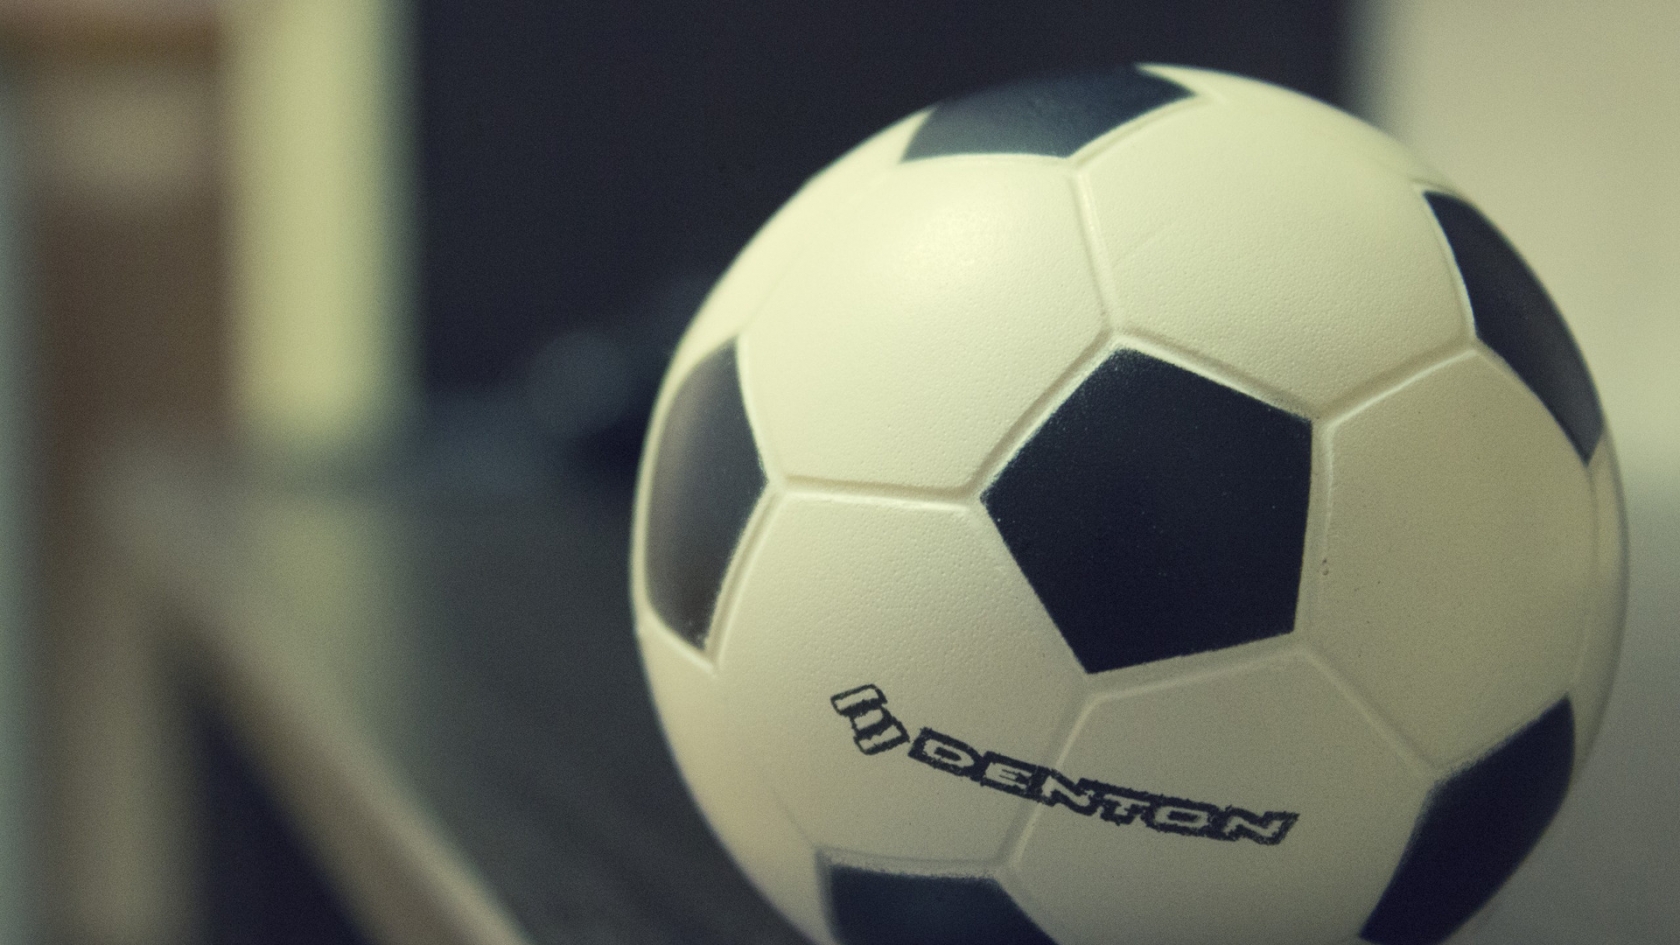 Denton Soccer Ball for 1680 x 945 HDTV resolution